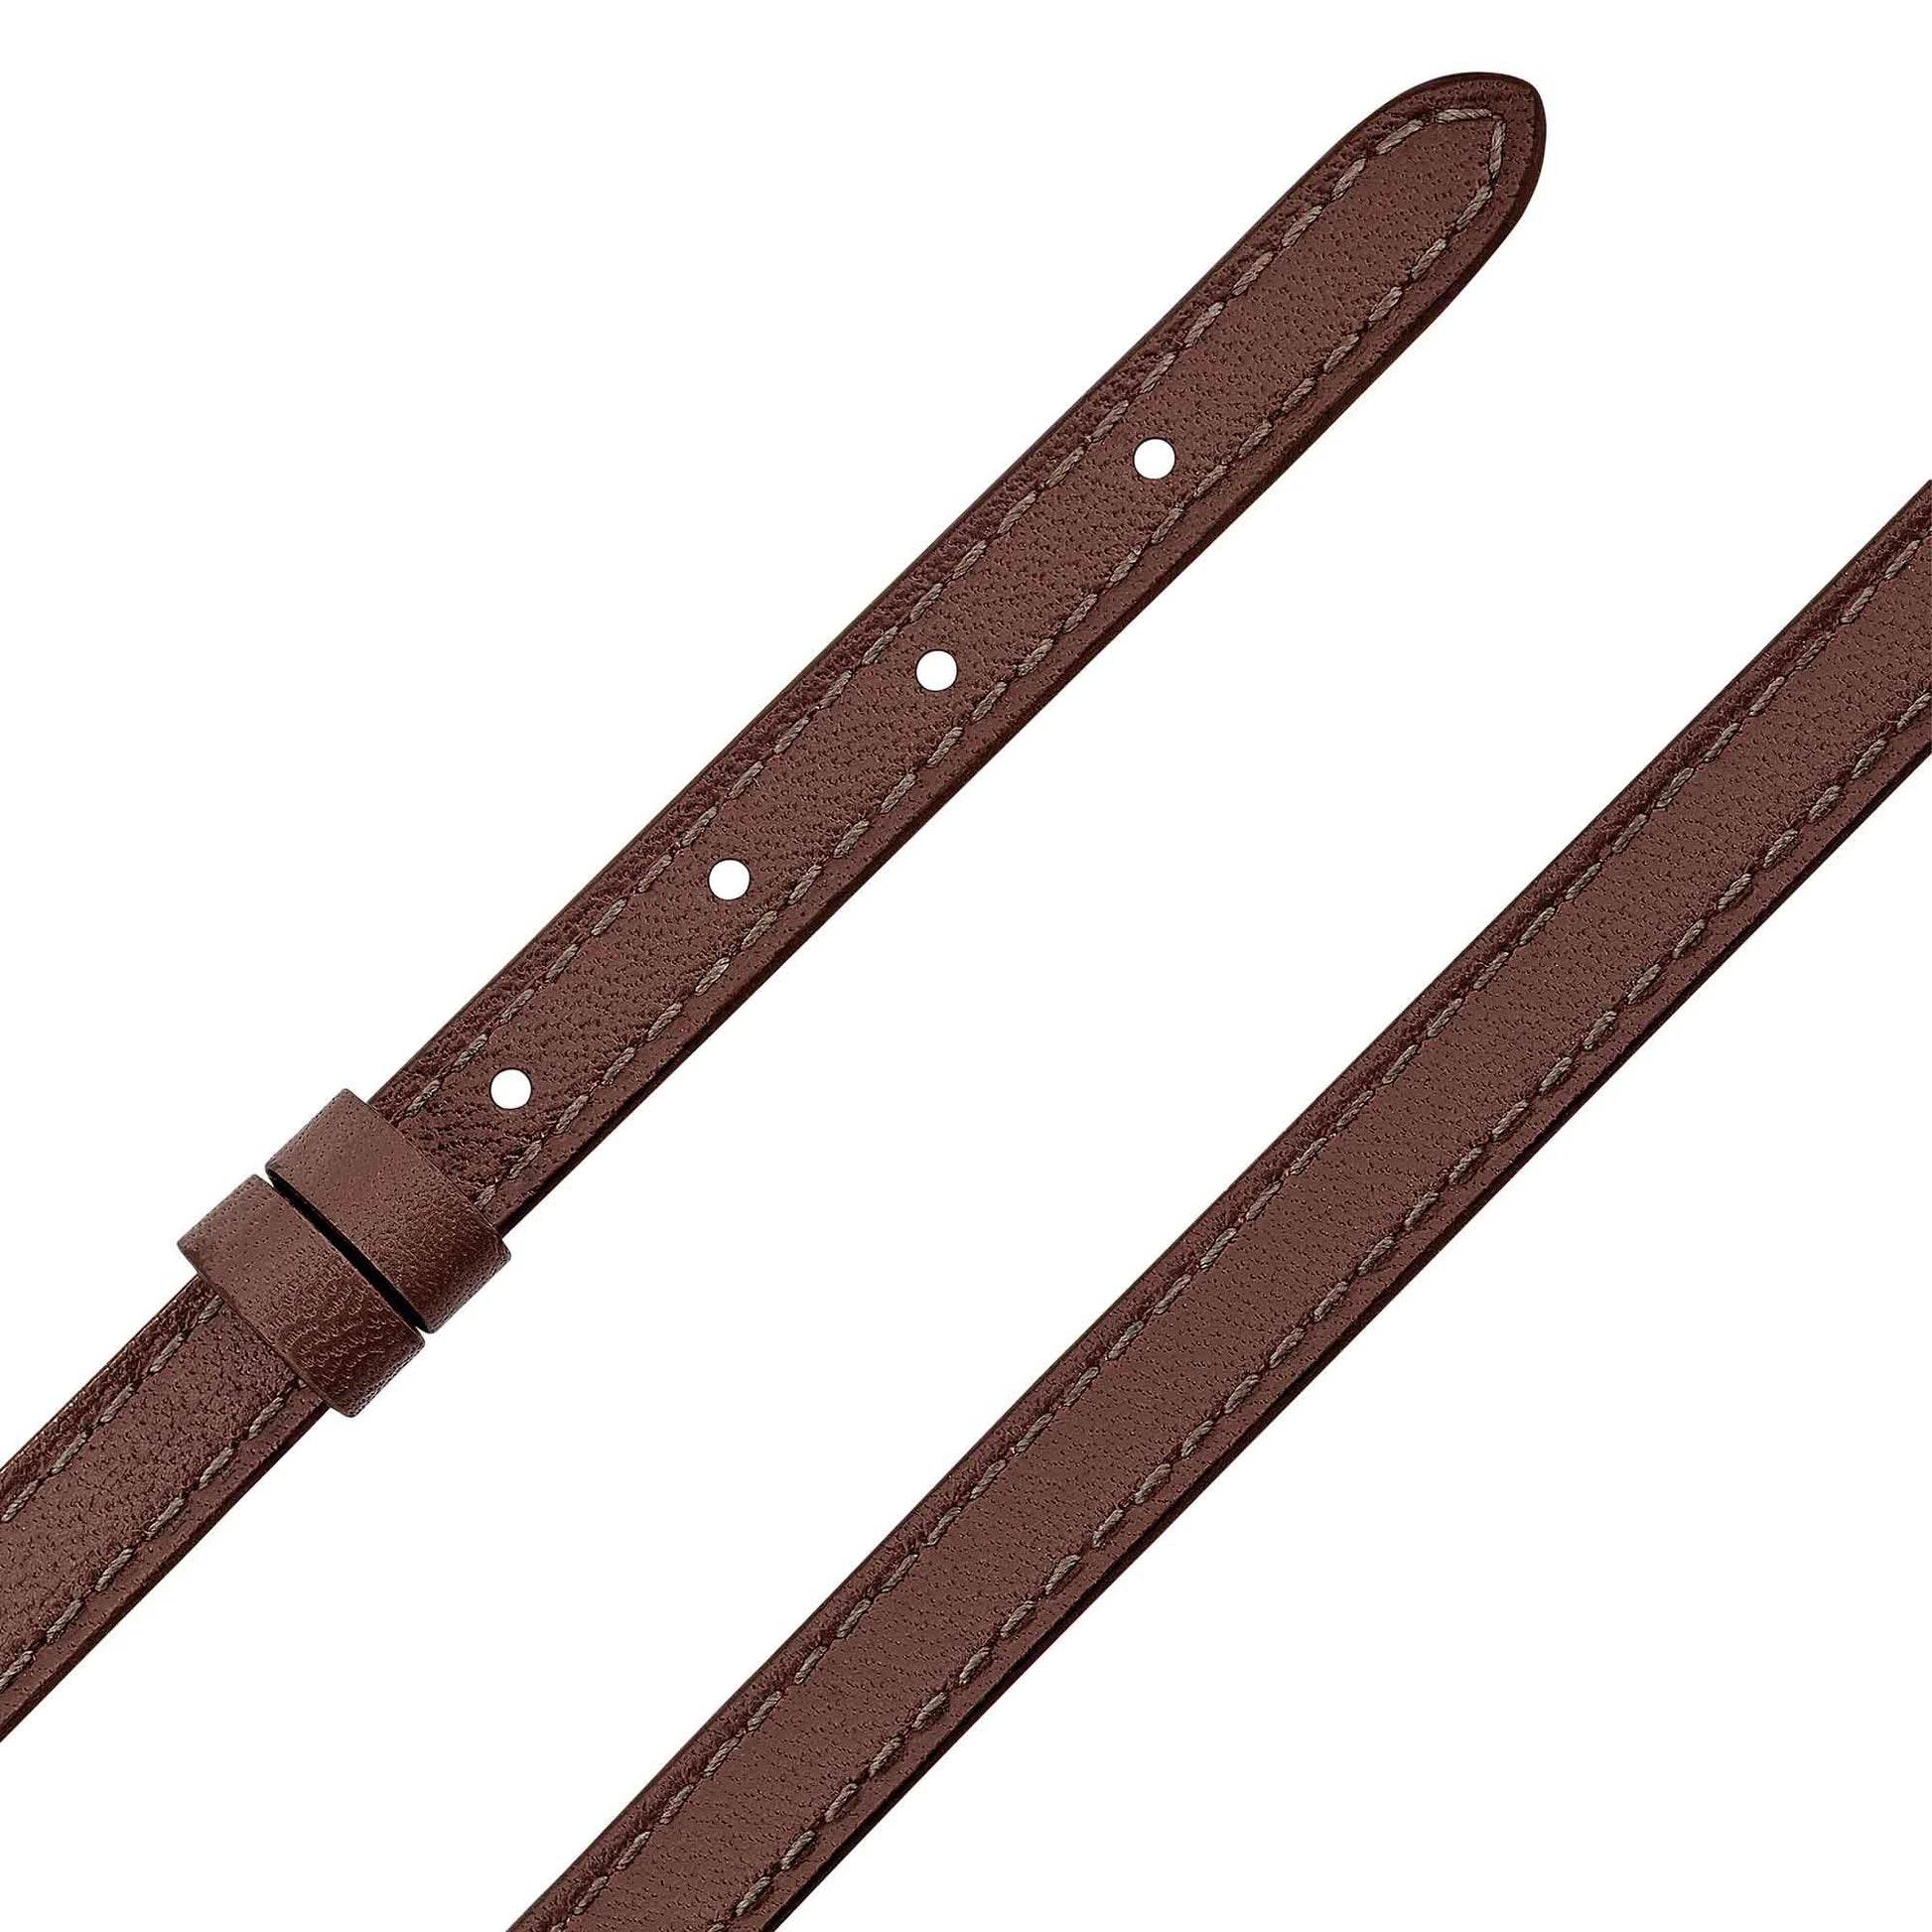 My Move Armband, Kalbsleder Chocolate Braun von Messika (32030) online kaufen